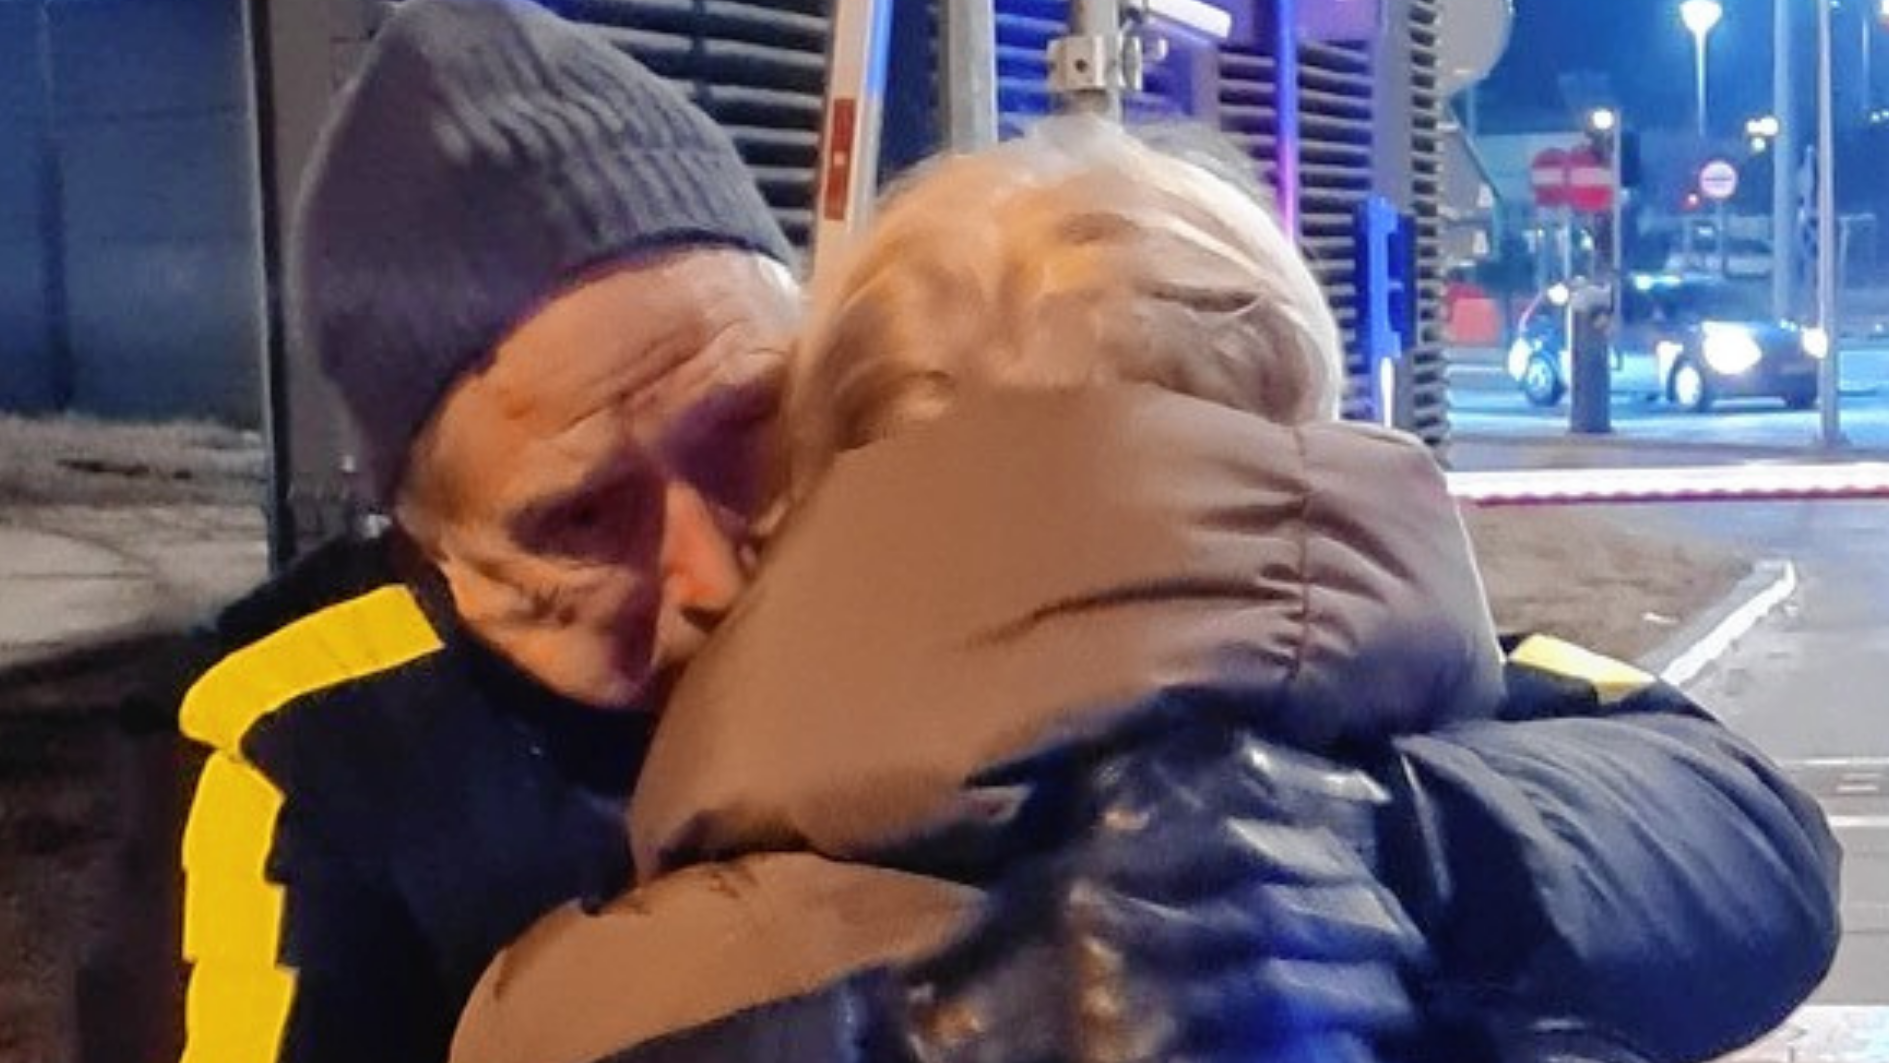 Benno Azzolini und seine Frau Larysa konnten einander nach bangen Stunden in die Arme schließen. Sie wollen jetzt auch anderen Menschen helfen. (Bild: zVg)